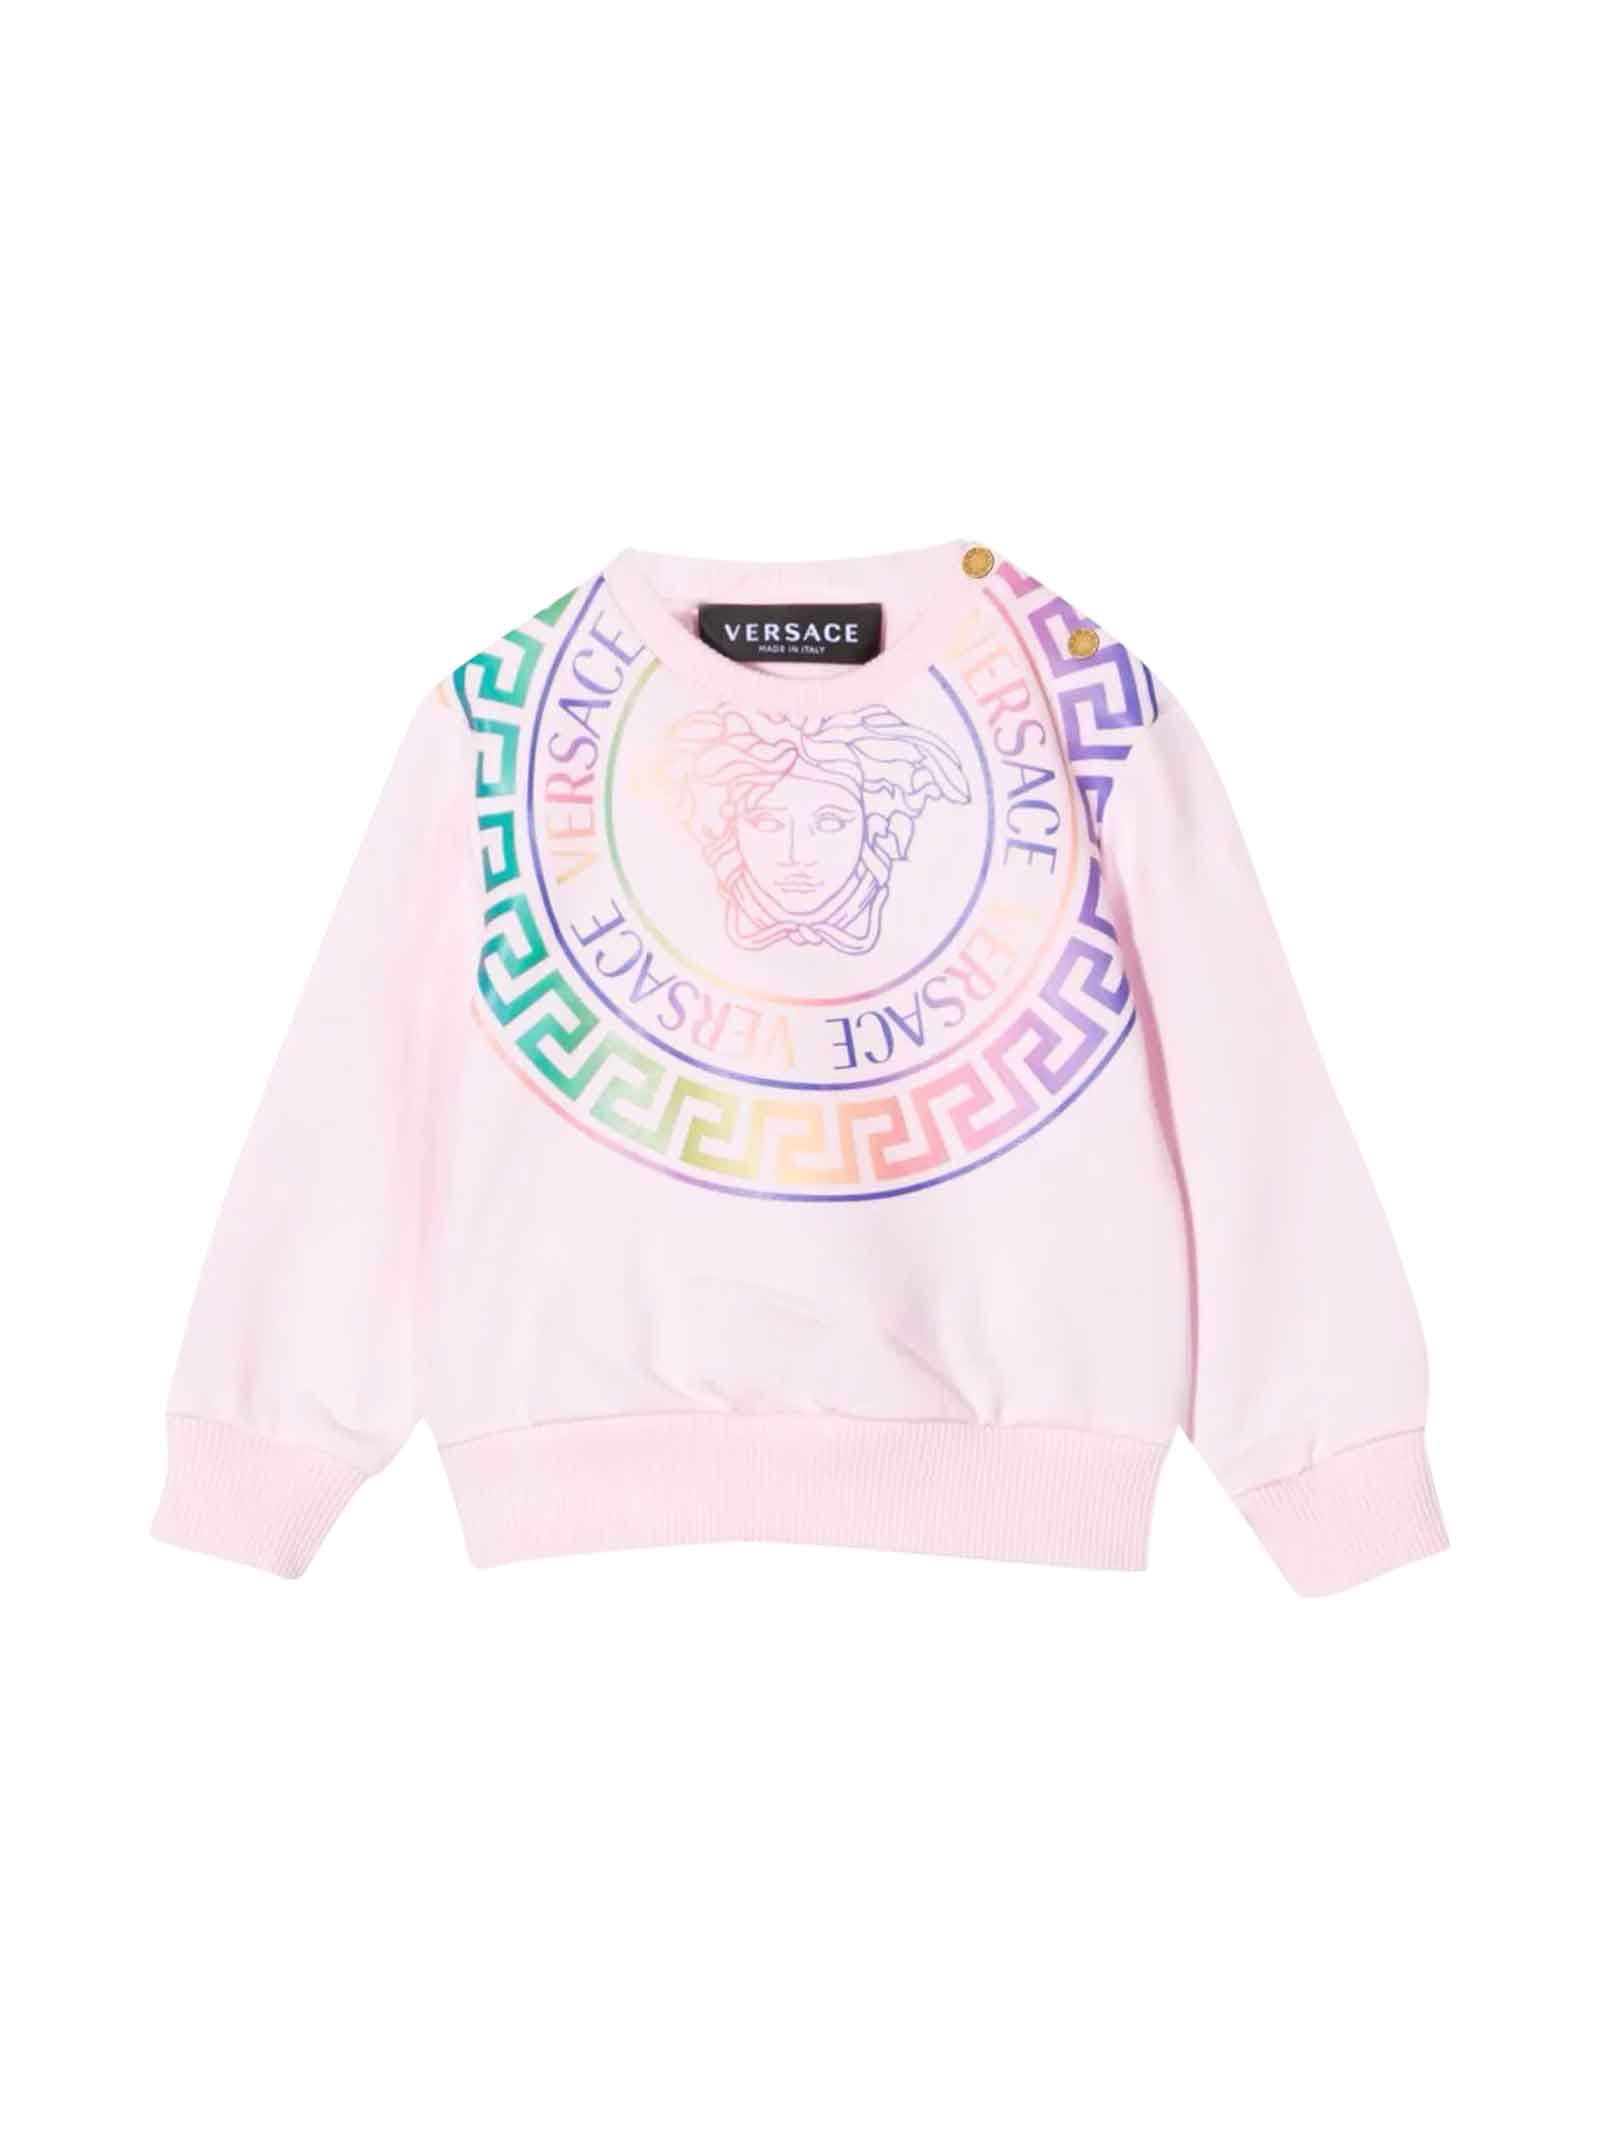 Versace Young Newborn Pink Sweatshirt